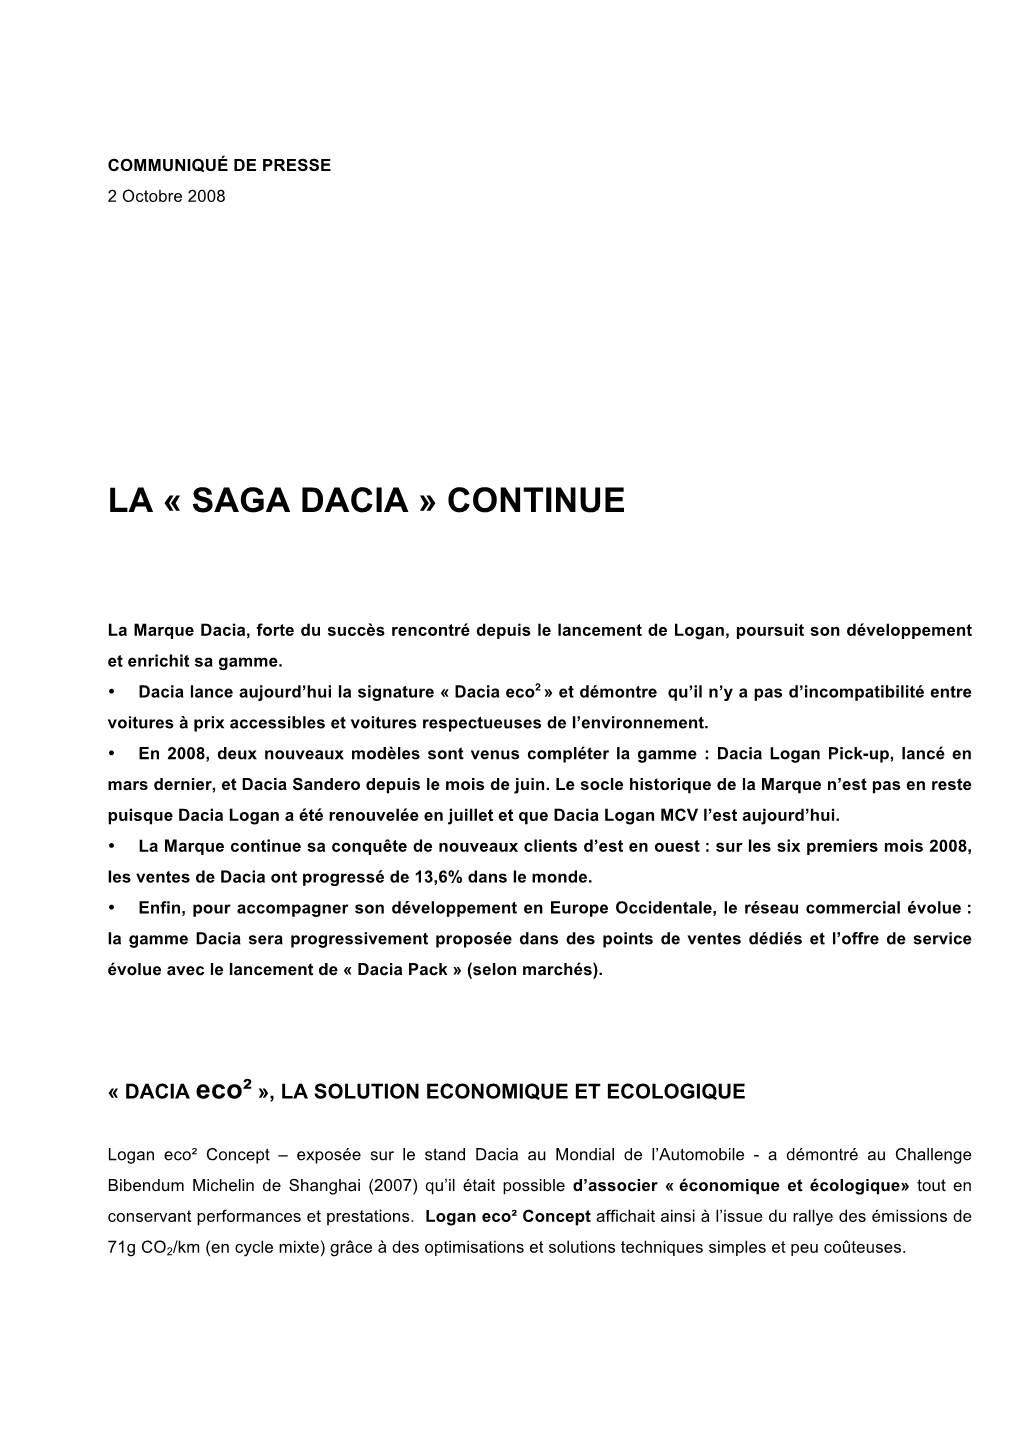 La « Saga Dacia » Continue